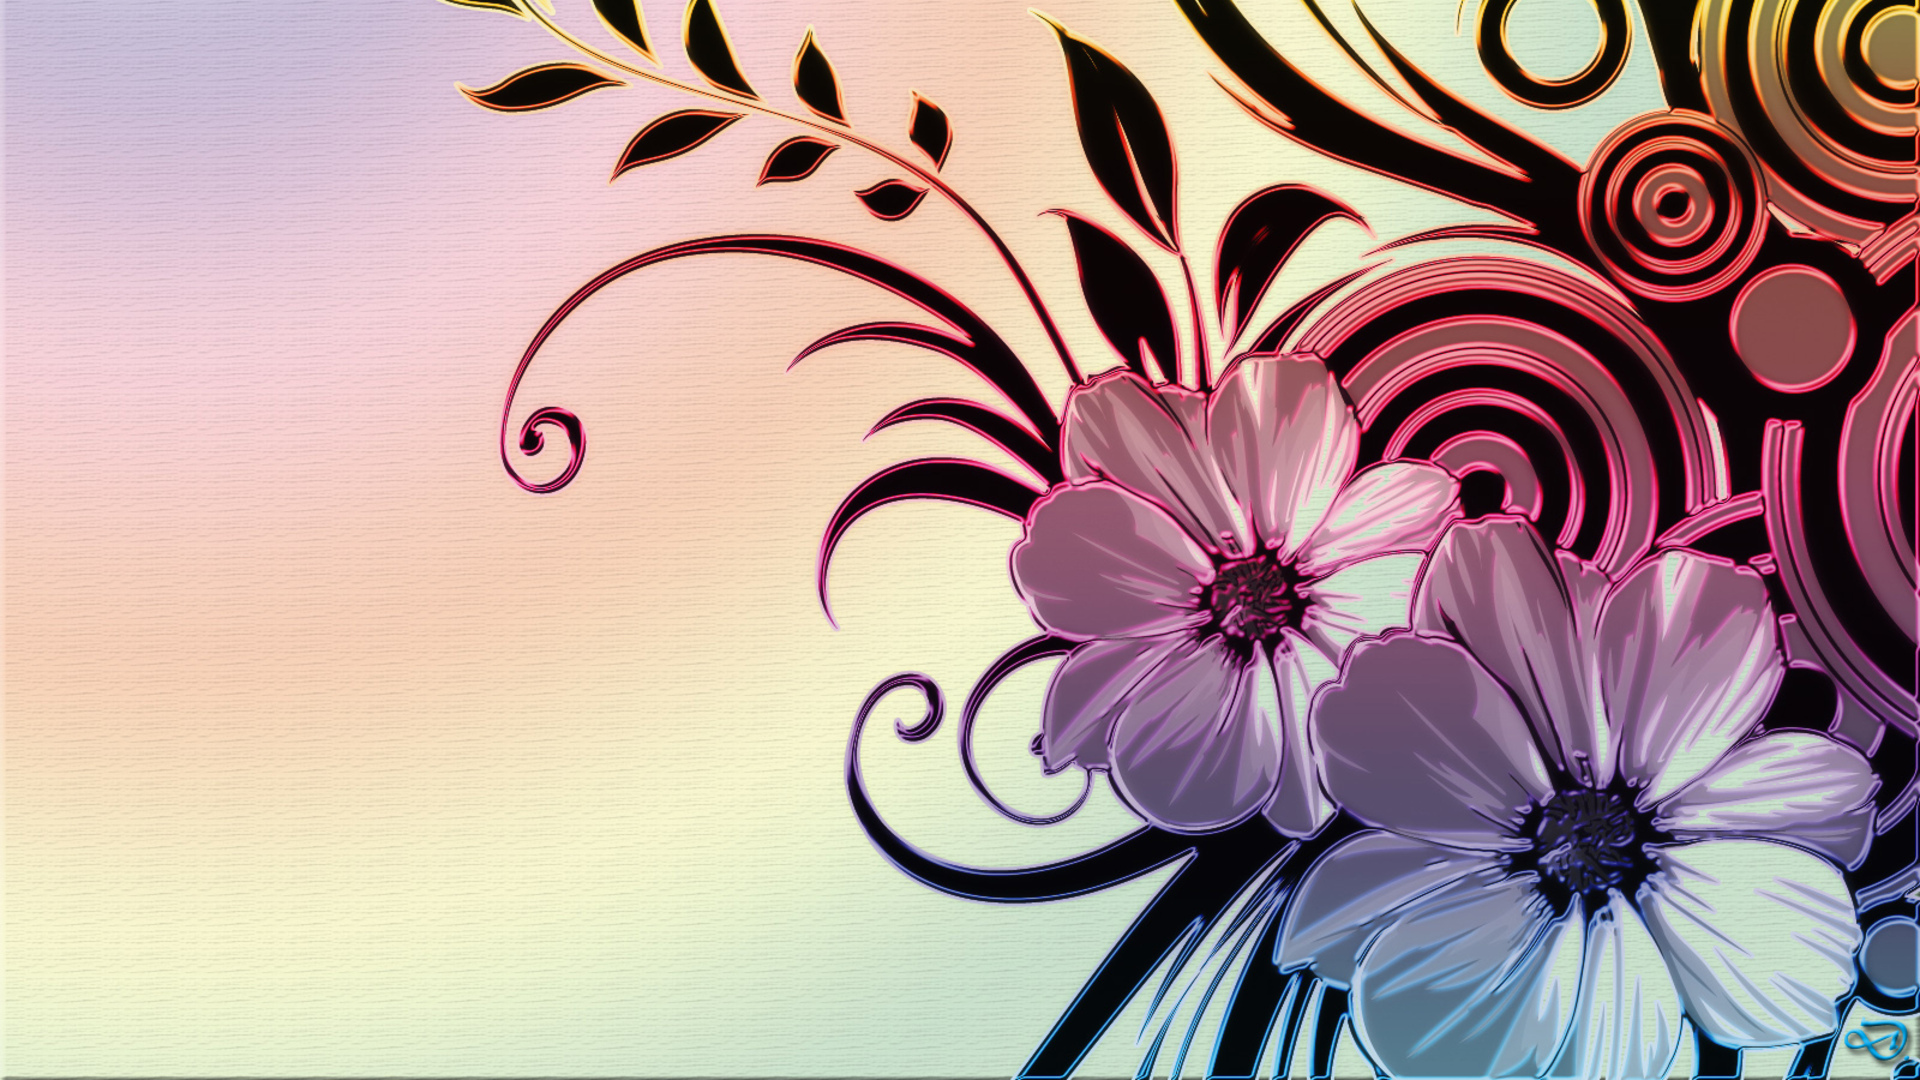 Flower design wallpaper